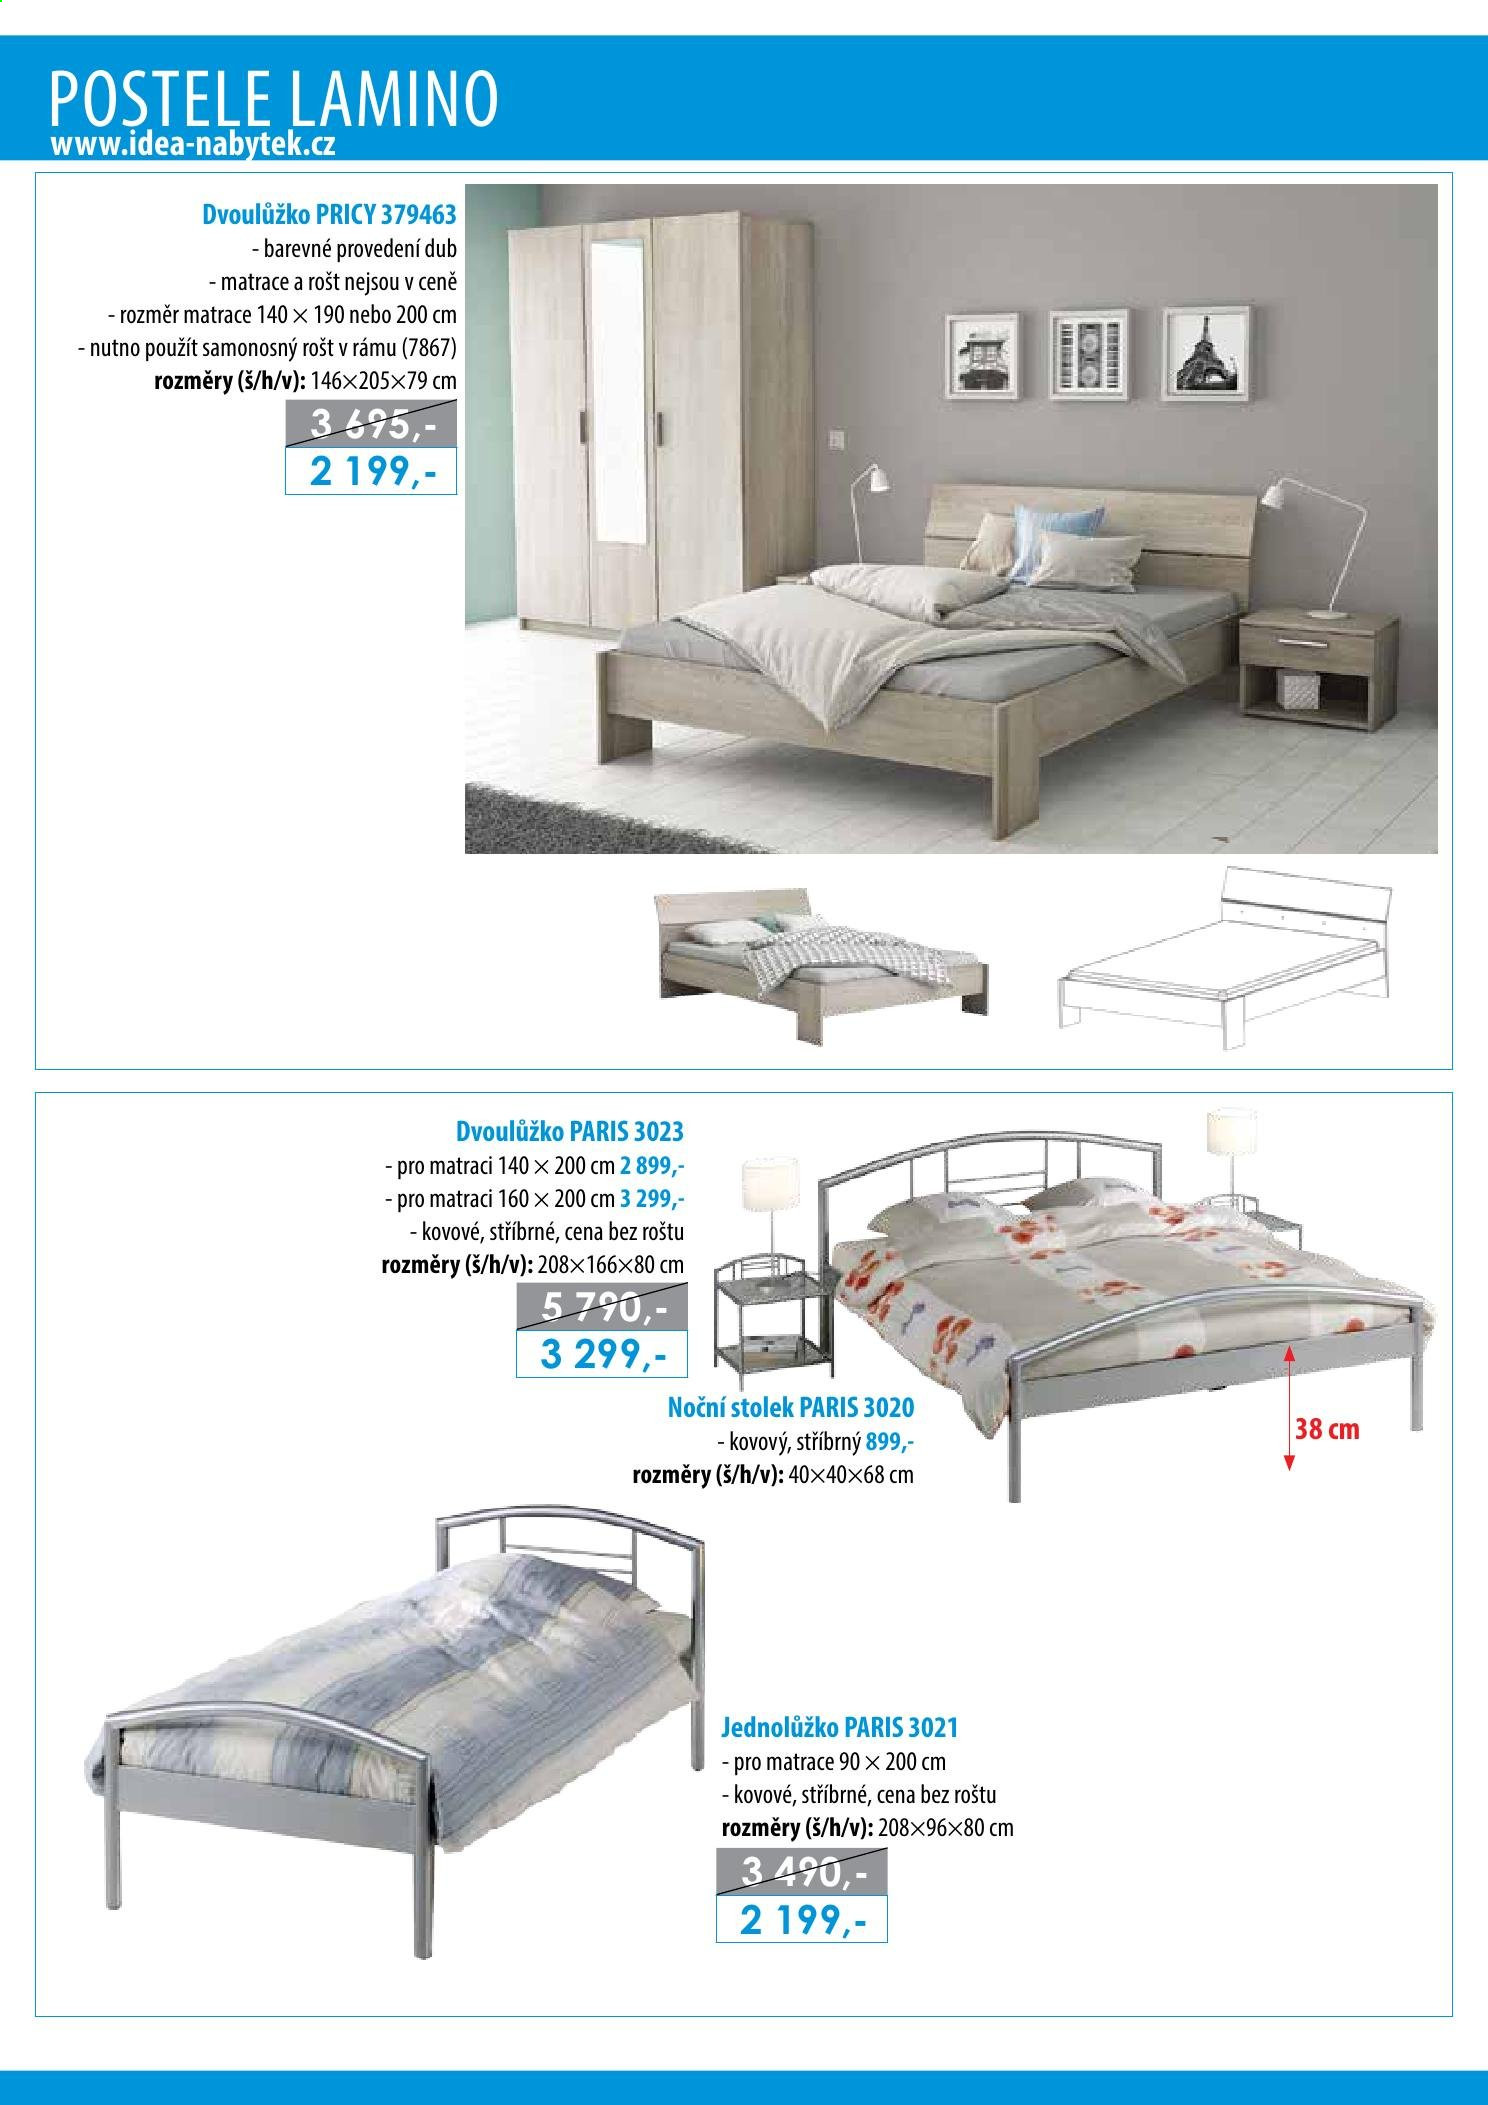 Leták IDEA nábytek - Produkty v akci - stolek, dvoulůžko, postel, rošt, noční stolek. Strana 16.